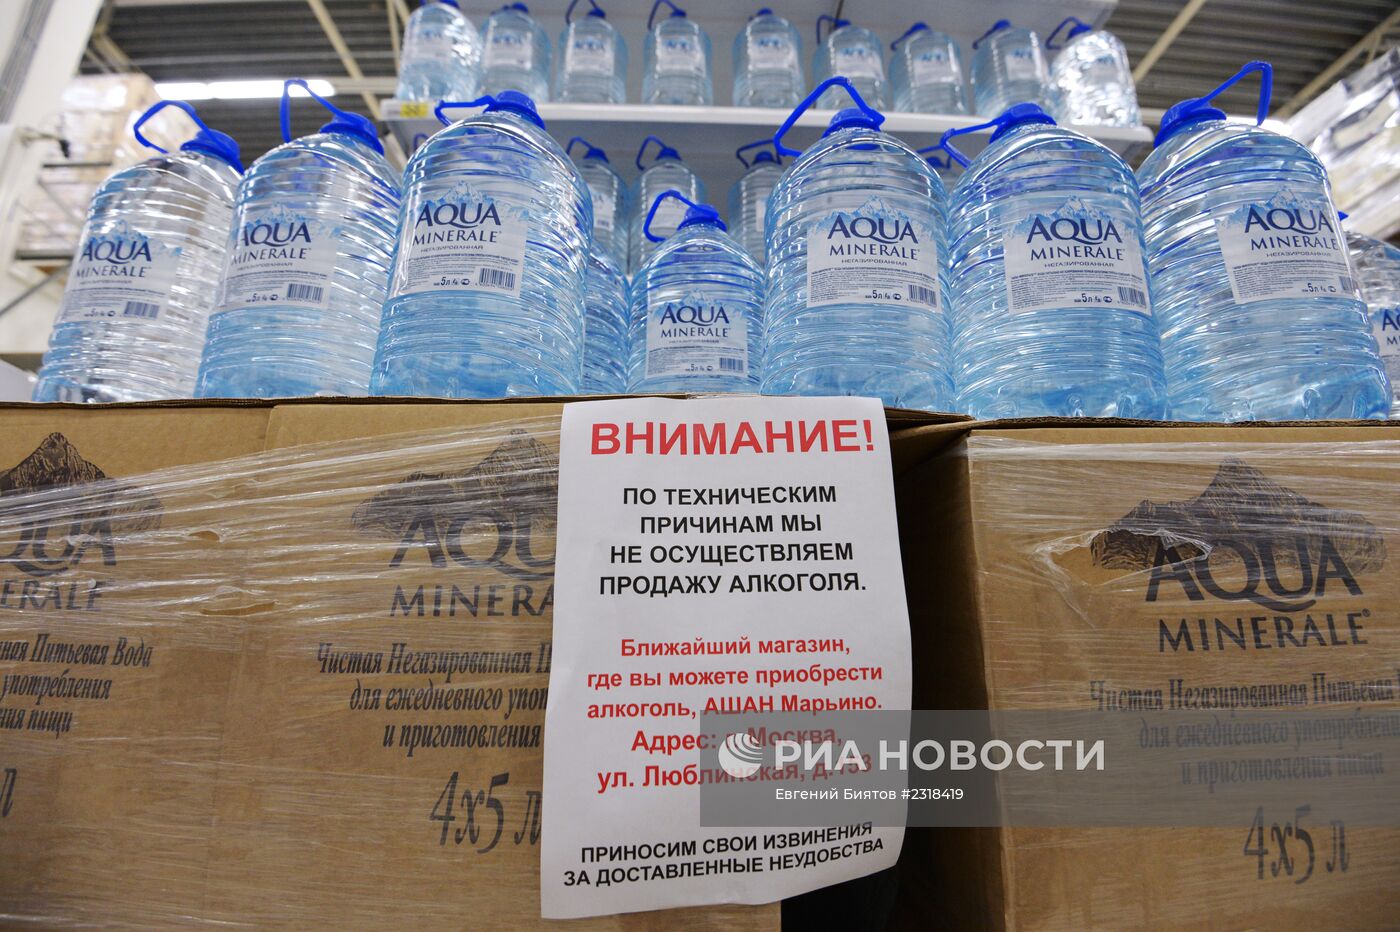 Продажа алкоголя приостановлена в подмосковных гипермаркетах "Ашан"